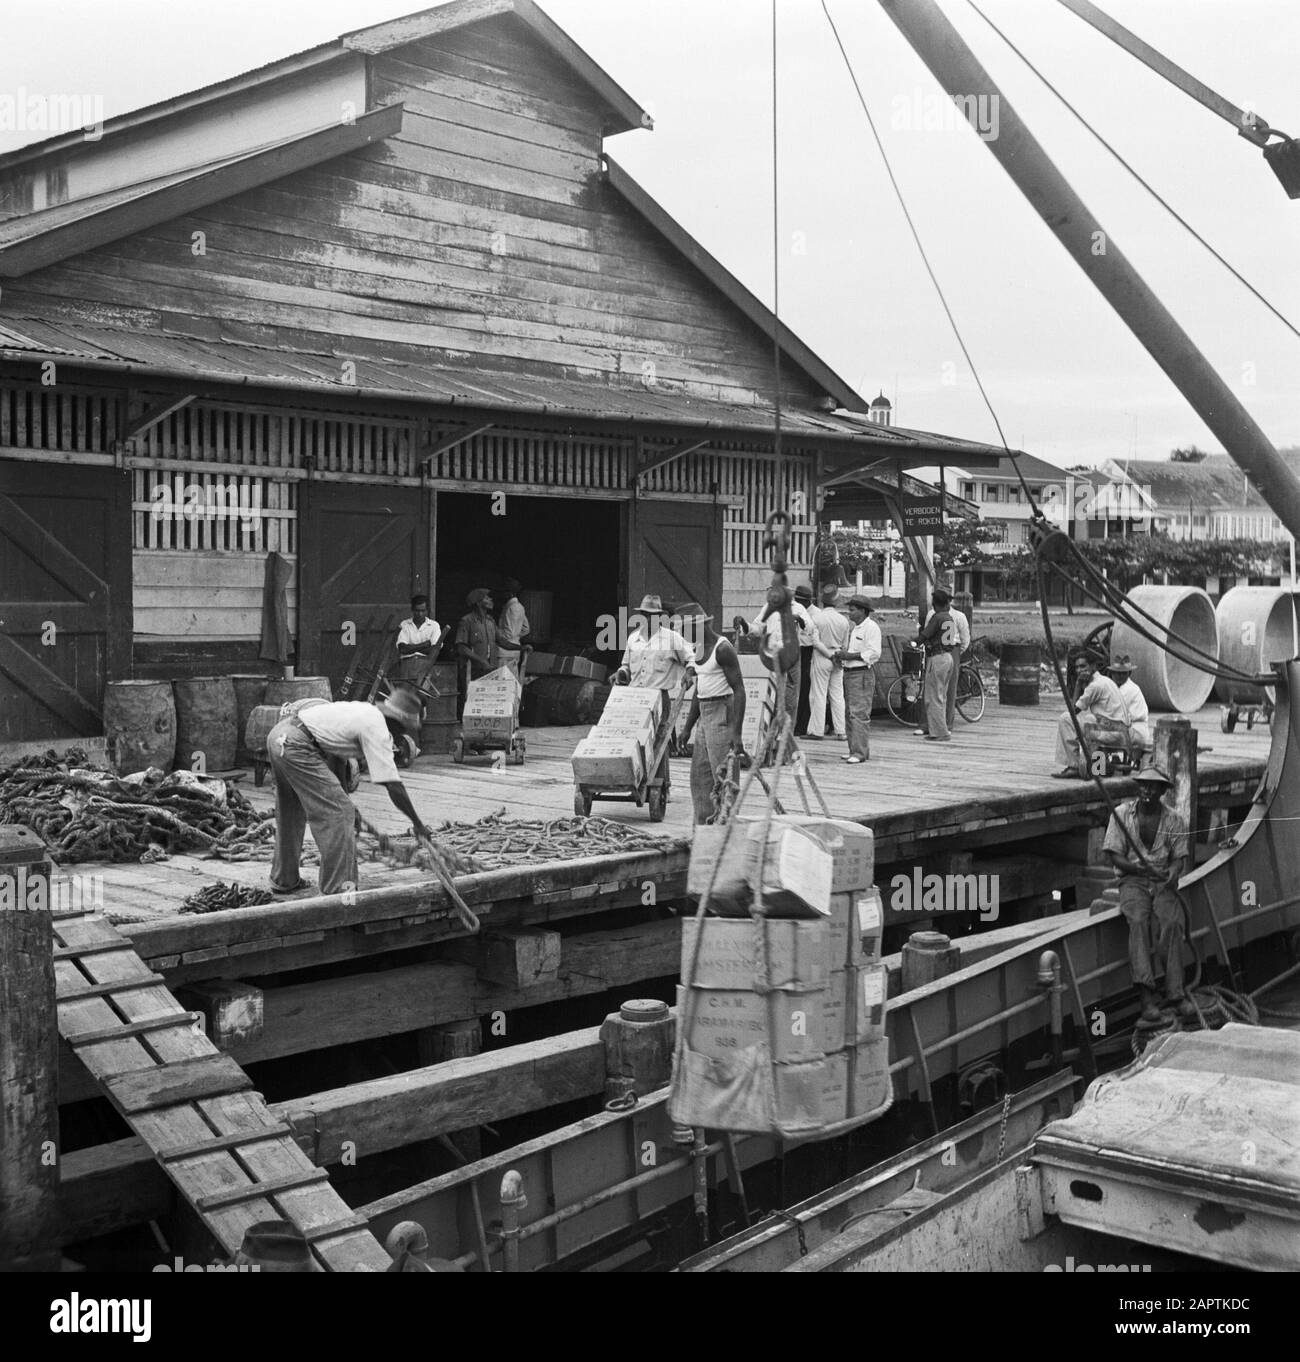 Viaggiare a Suriname e Antille olandesi Caricamento della nave nel porto di Paramaribo Data: 1947 Località: Paramaribo, Suriname Parole Chiave: Operai, banchine, navi Foto Stock